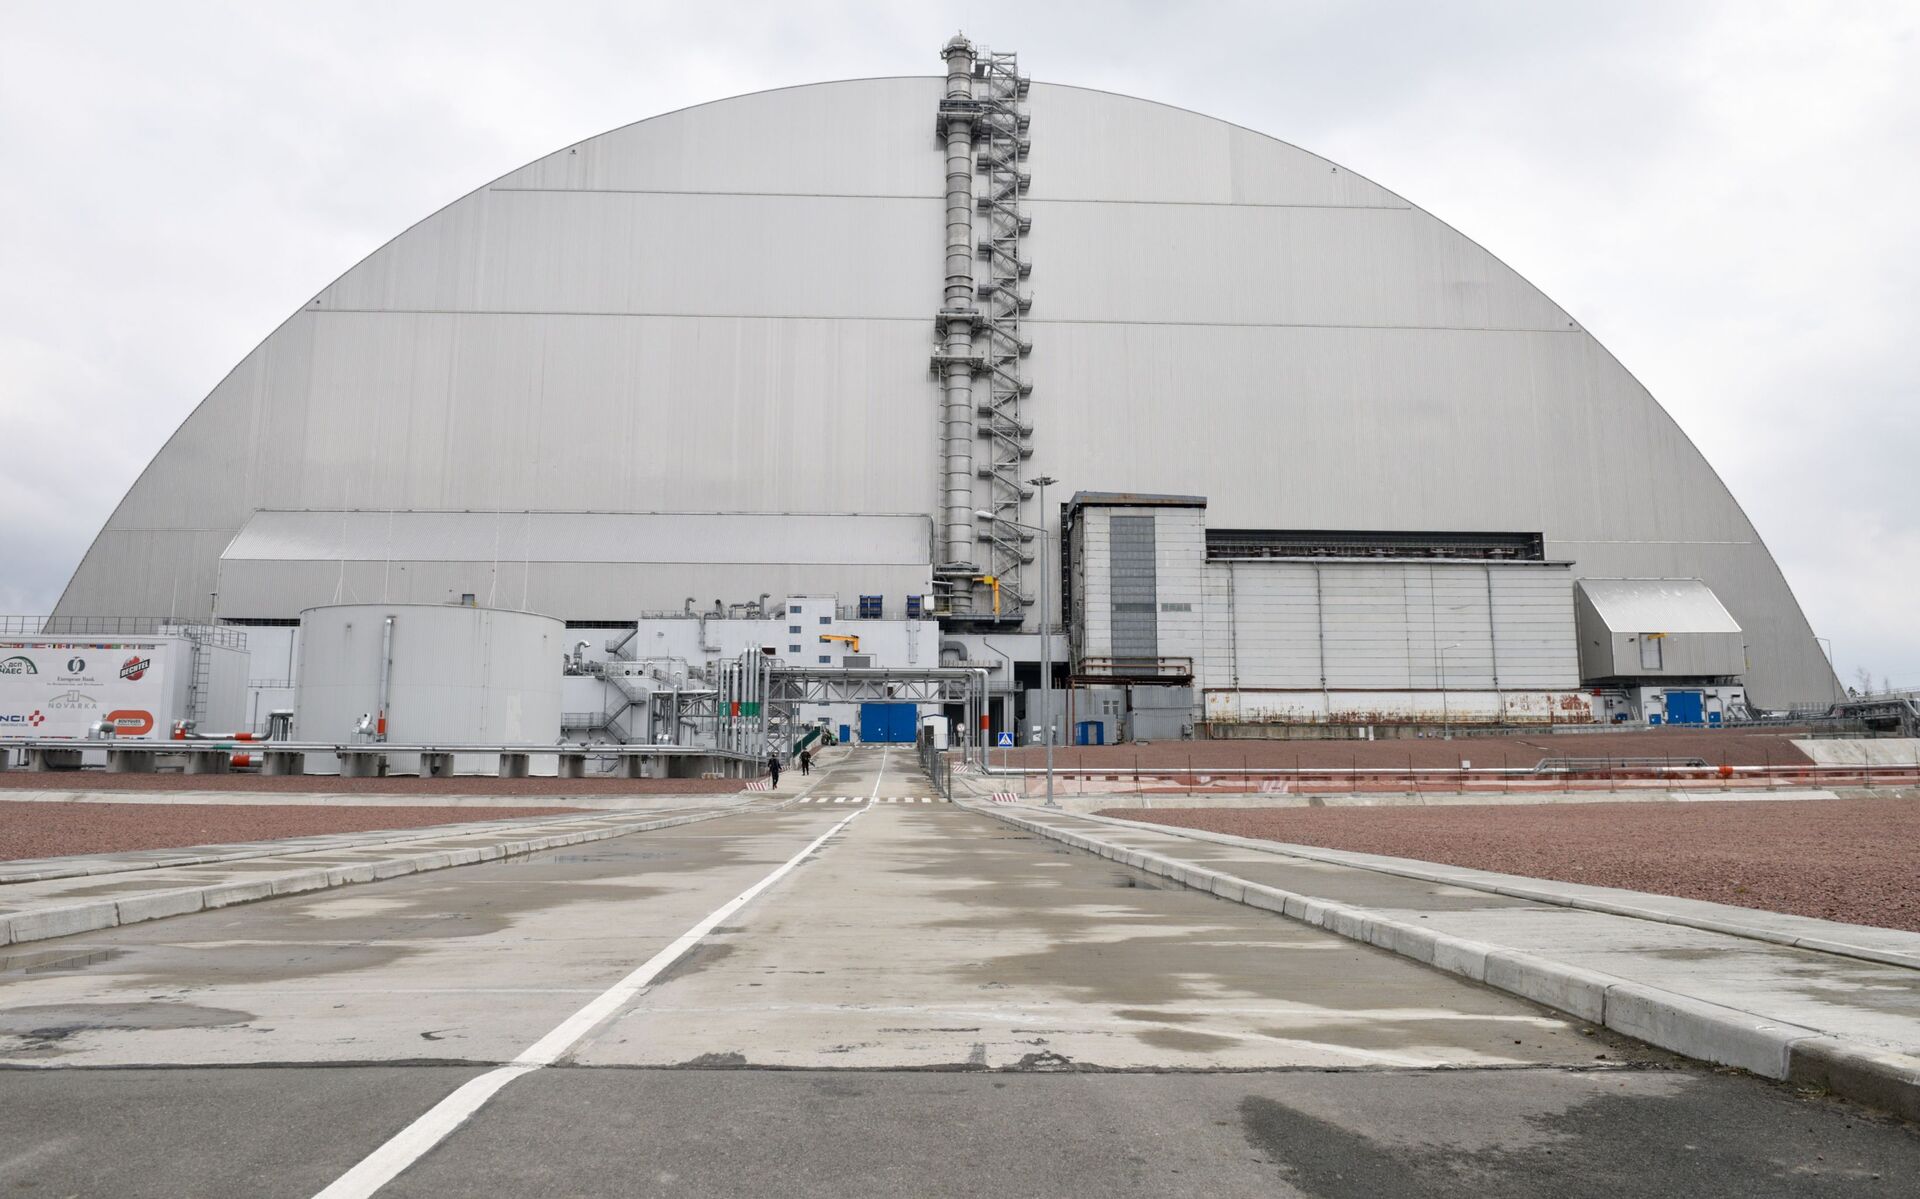 Nova catástrofe à vista? Cientistas estão assustados com 'incertezas' na usina nuclear de Chernobyl - Sputnik Brasil, 1920, 18.05.2021